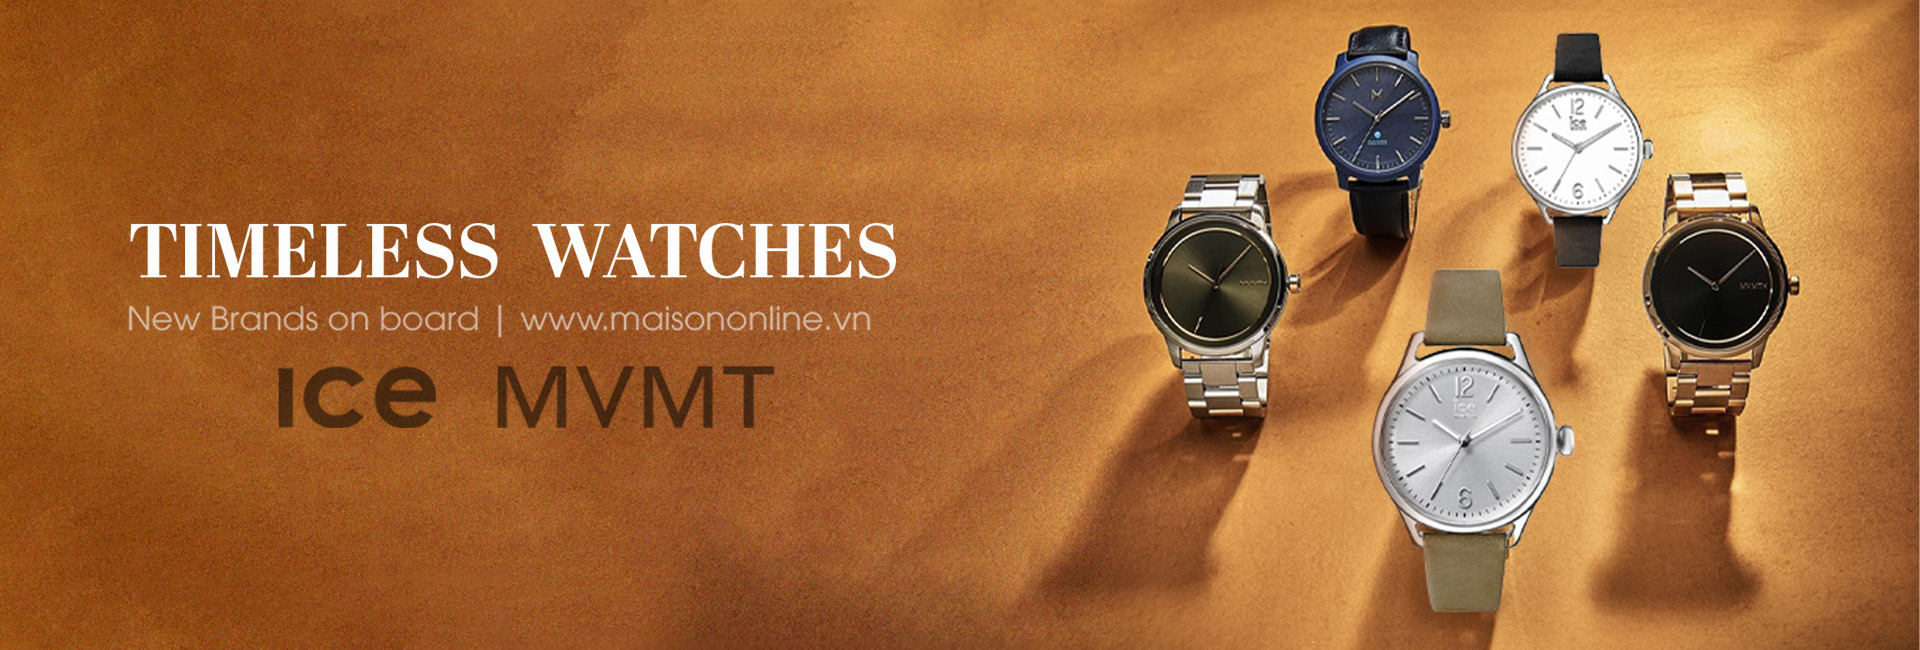 New watch brands: ICE & MVMT